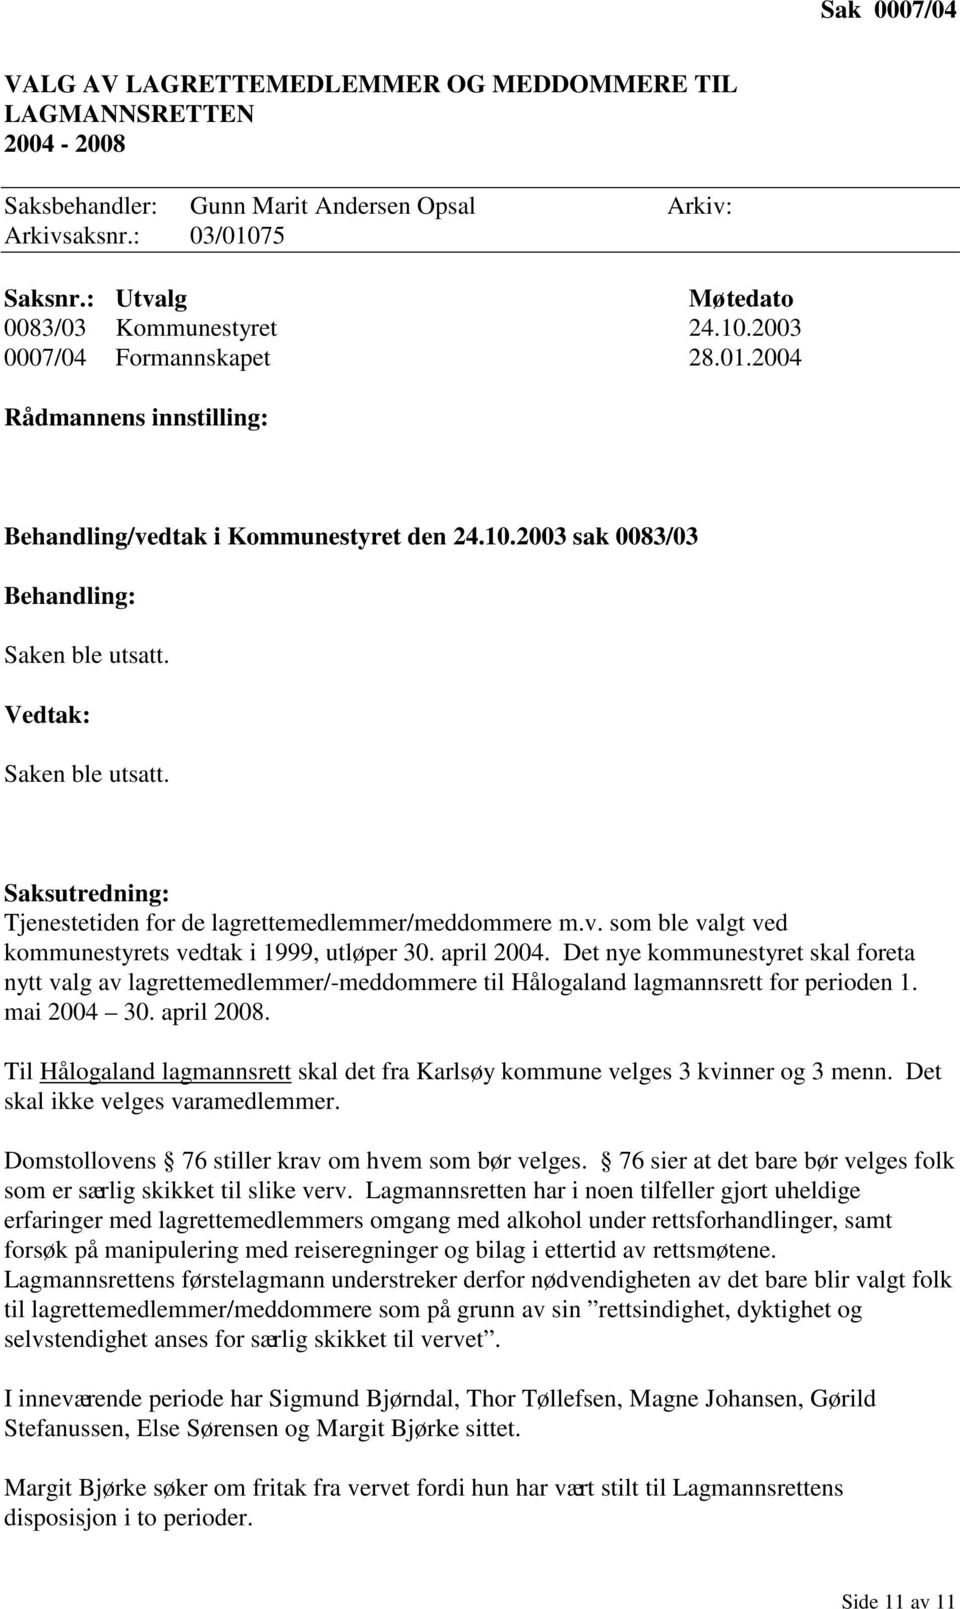 april 2004. Det nye kommunestyret skal foreta nytt valg av lagrettemedlemmer/-meddommere til Hålogaland lagmannsrett for perioden 1. mai 2004 30. april 2008.